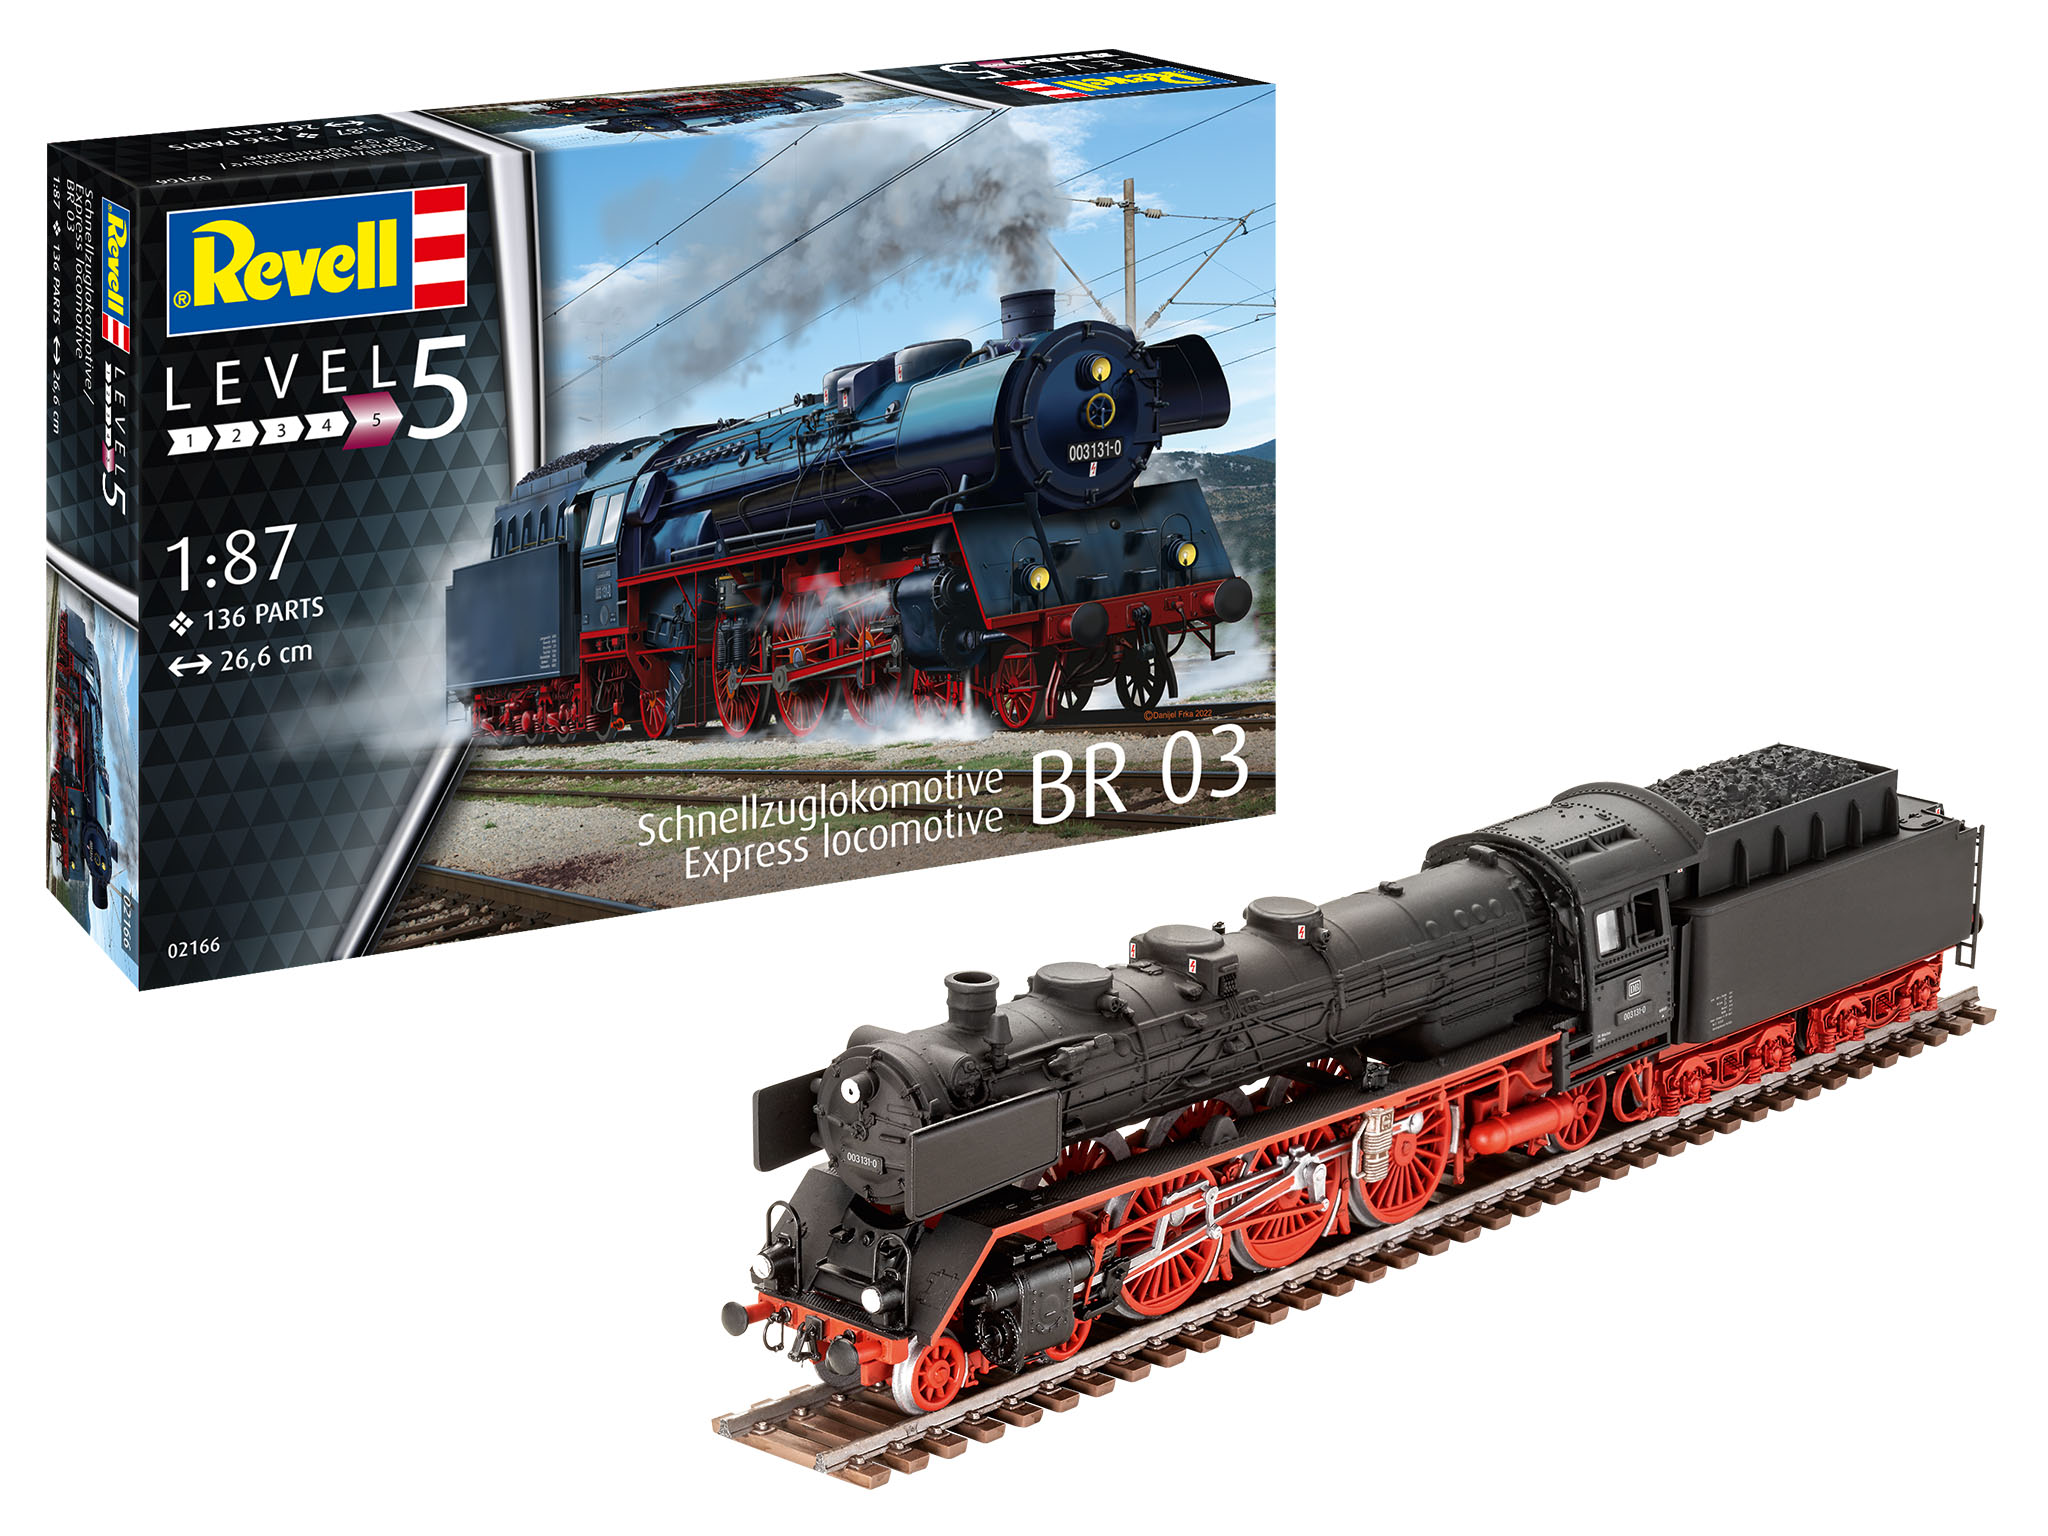 Schnellzuglokomotive BR03 - 02166